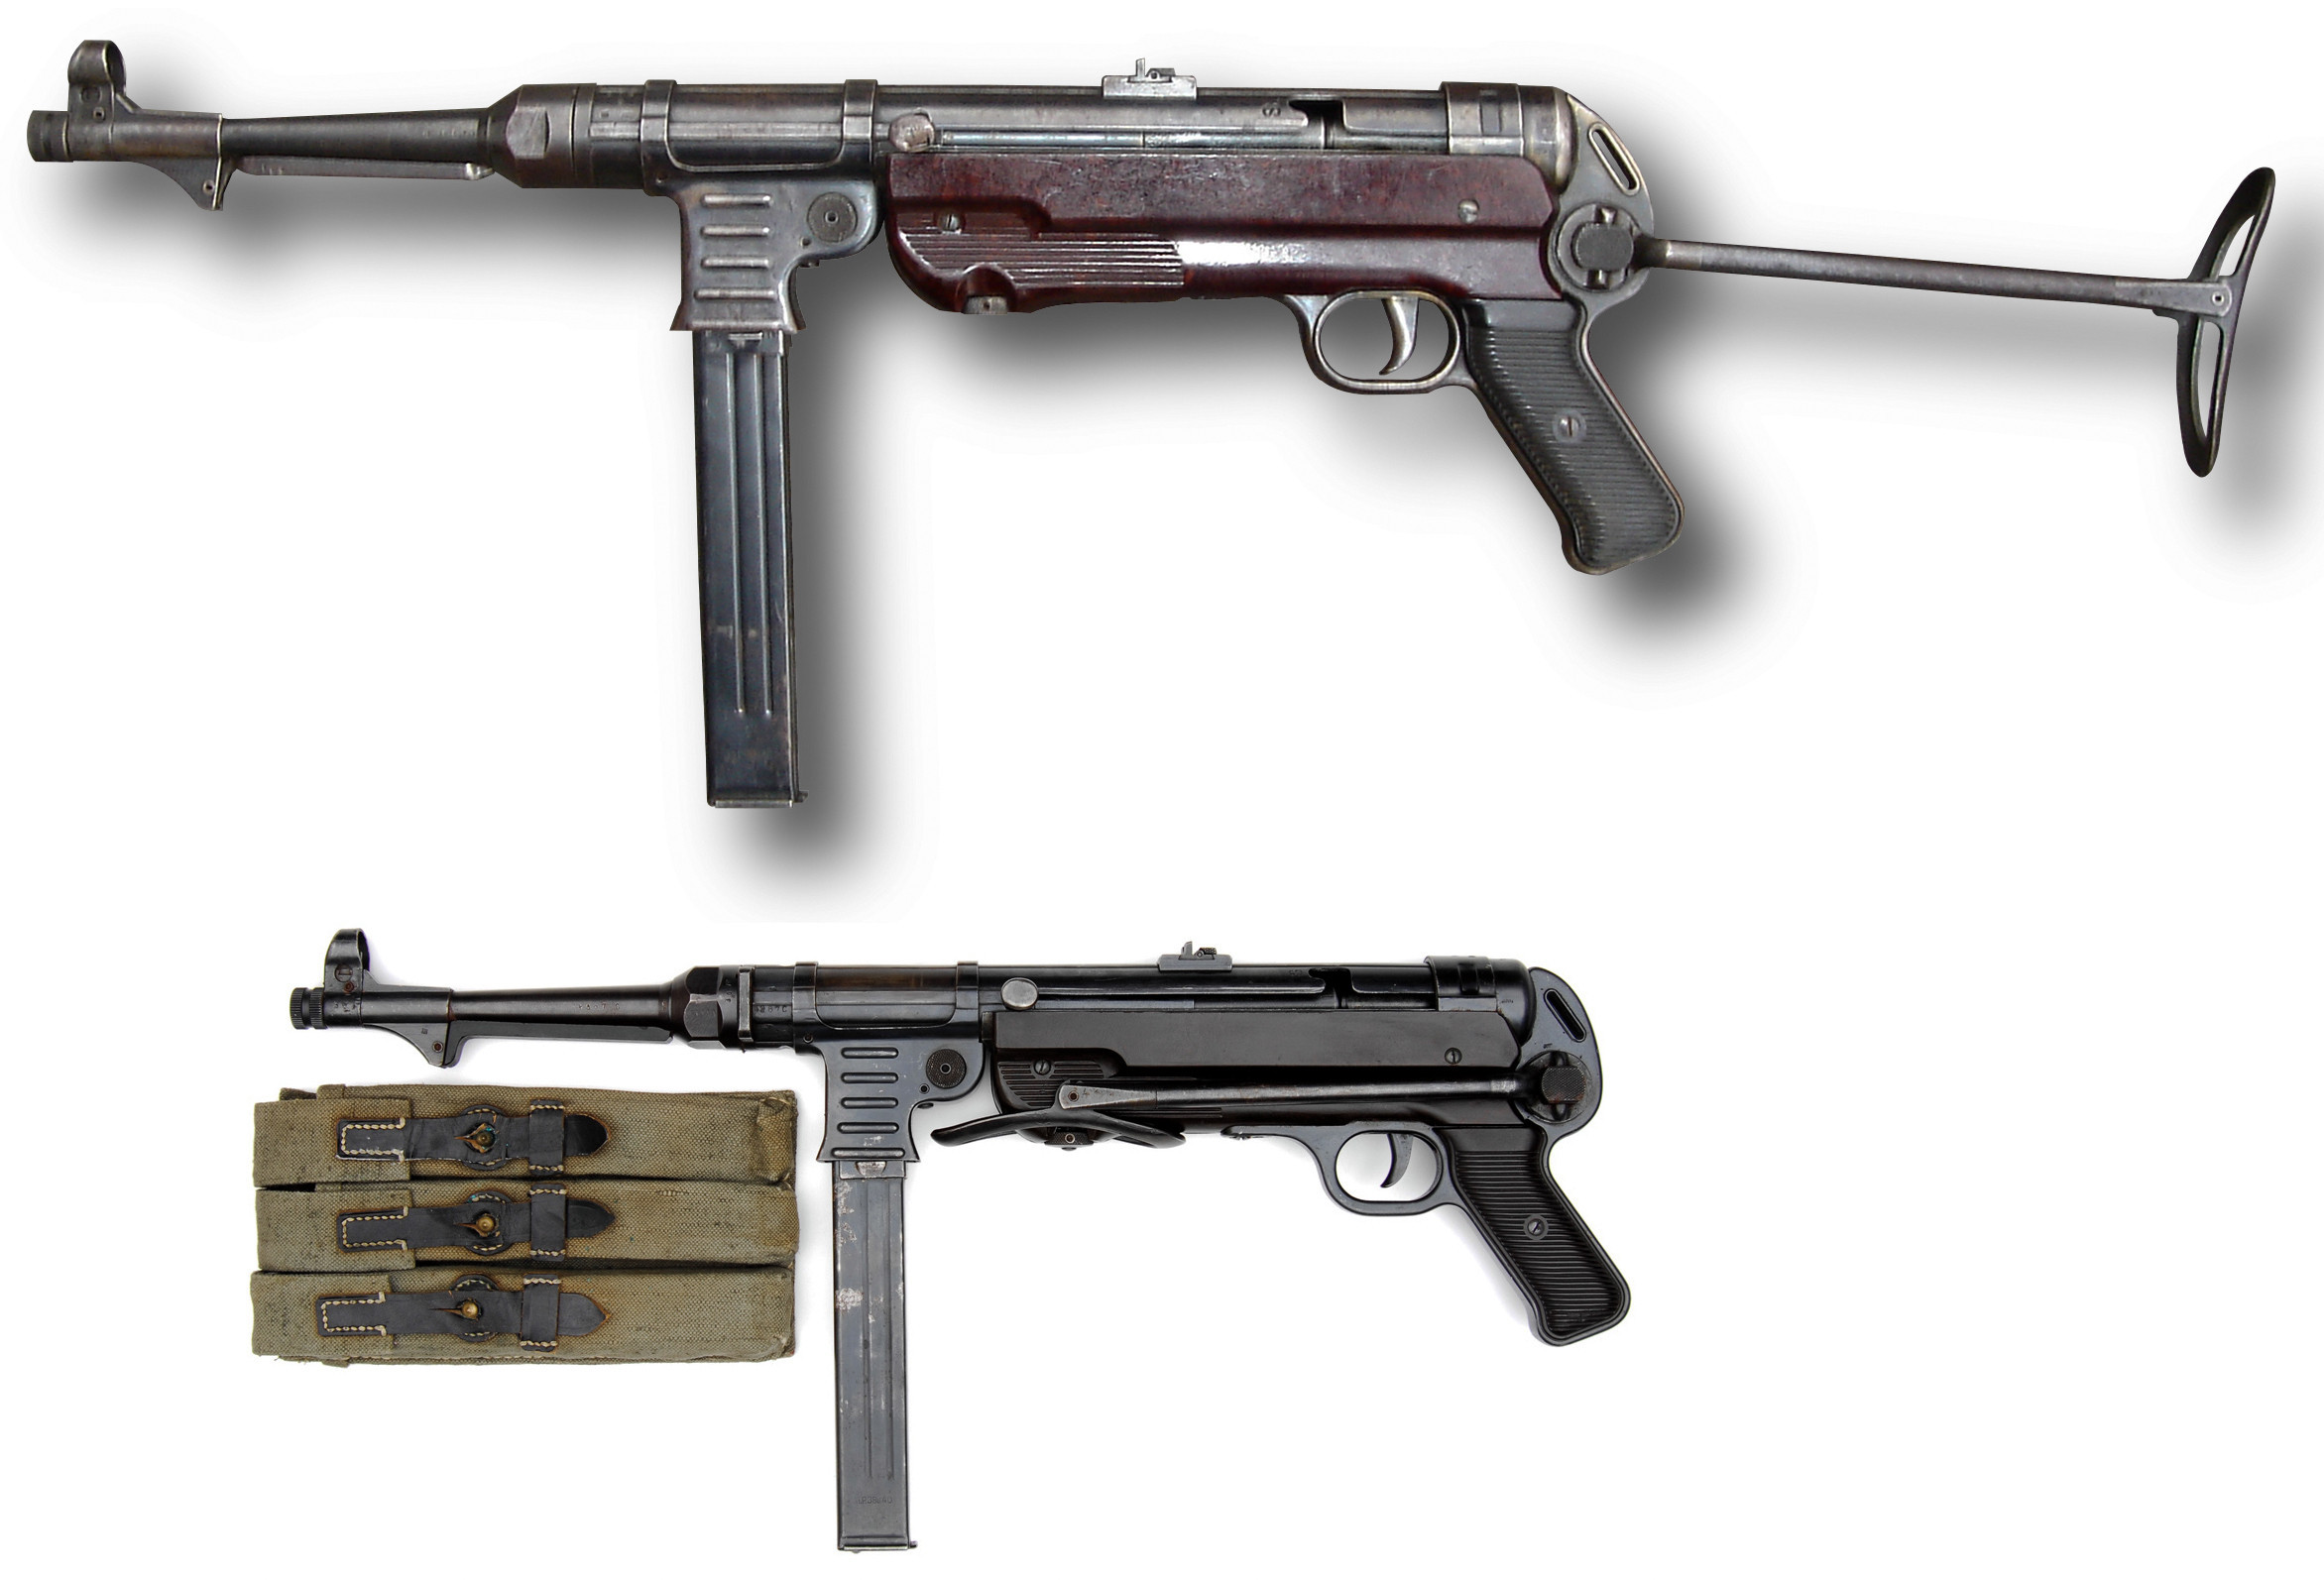 德军武器经典之作,被称为纳粹屠夫,开创性使用了折叠枪托